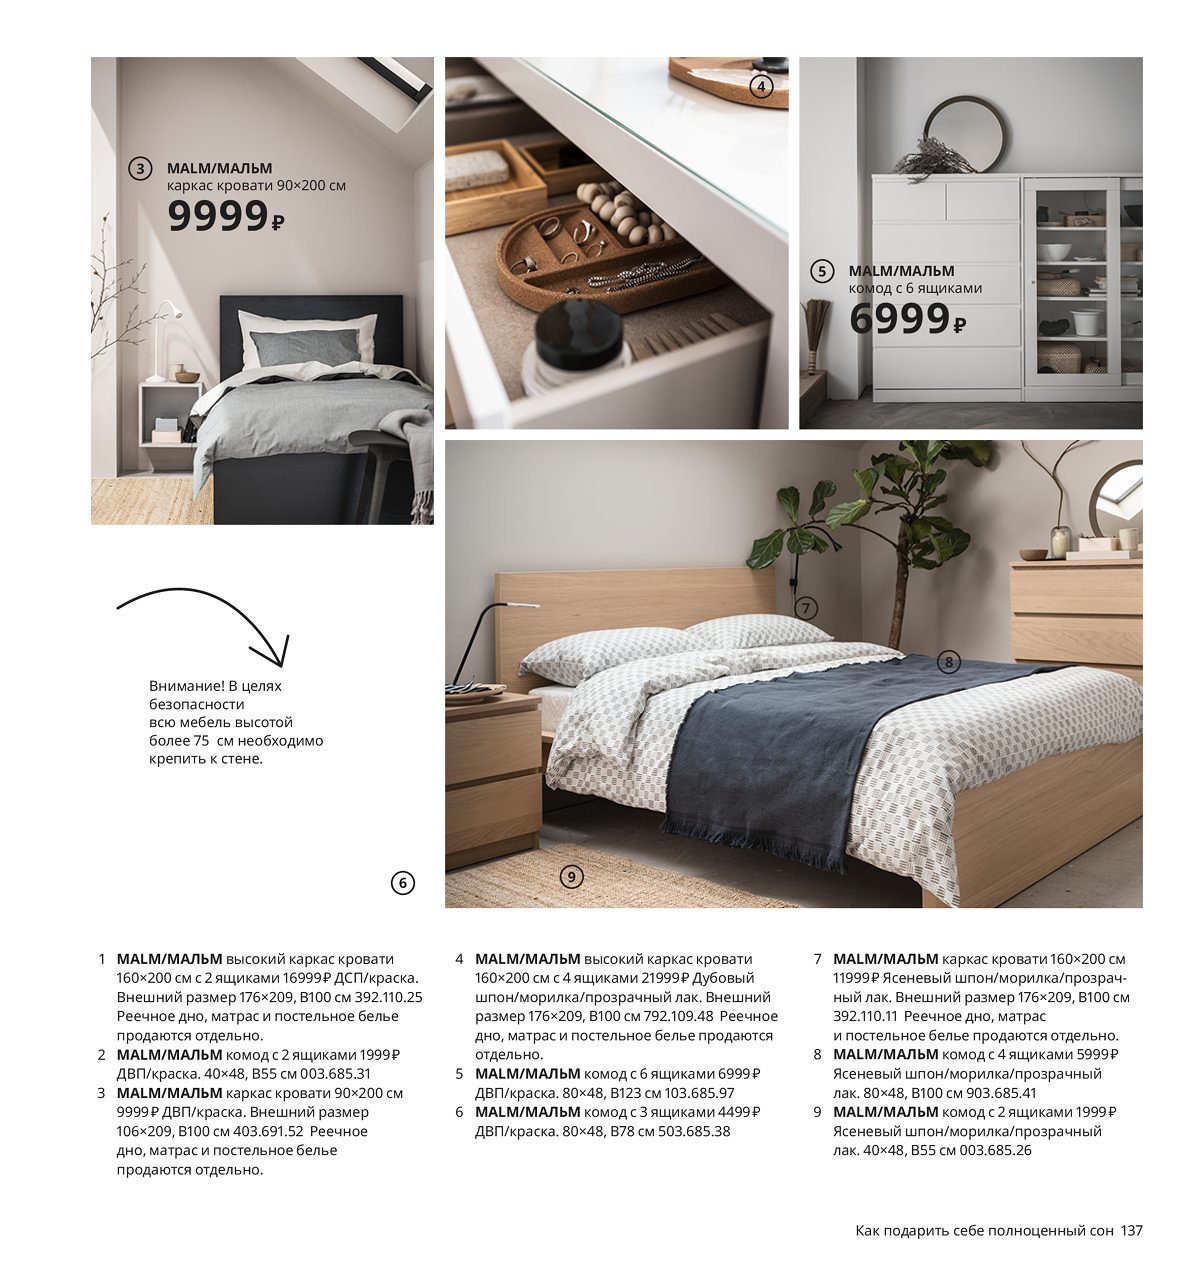 Ikea каталог постельное белье 2020-2021